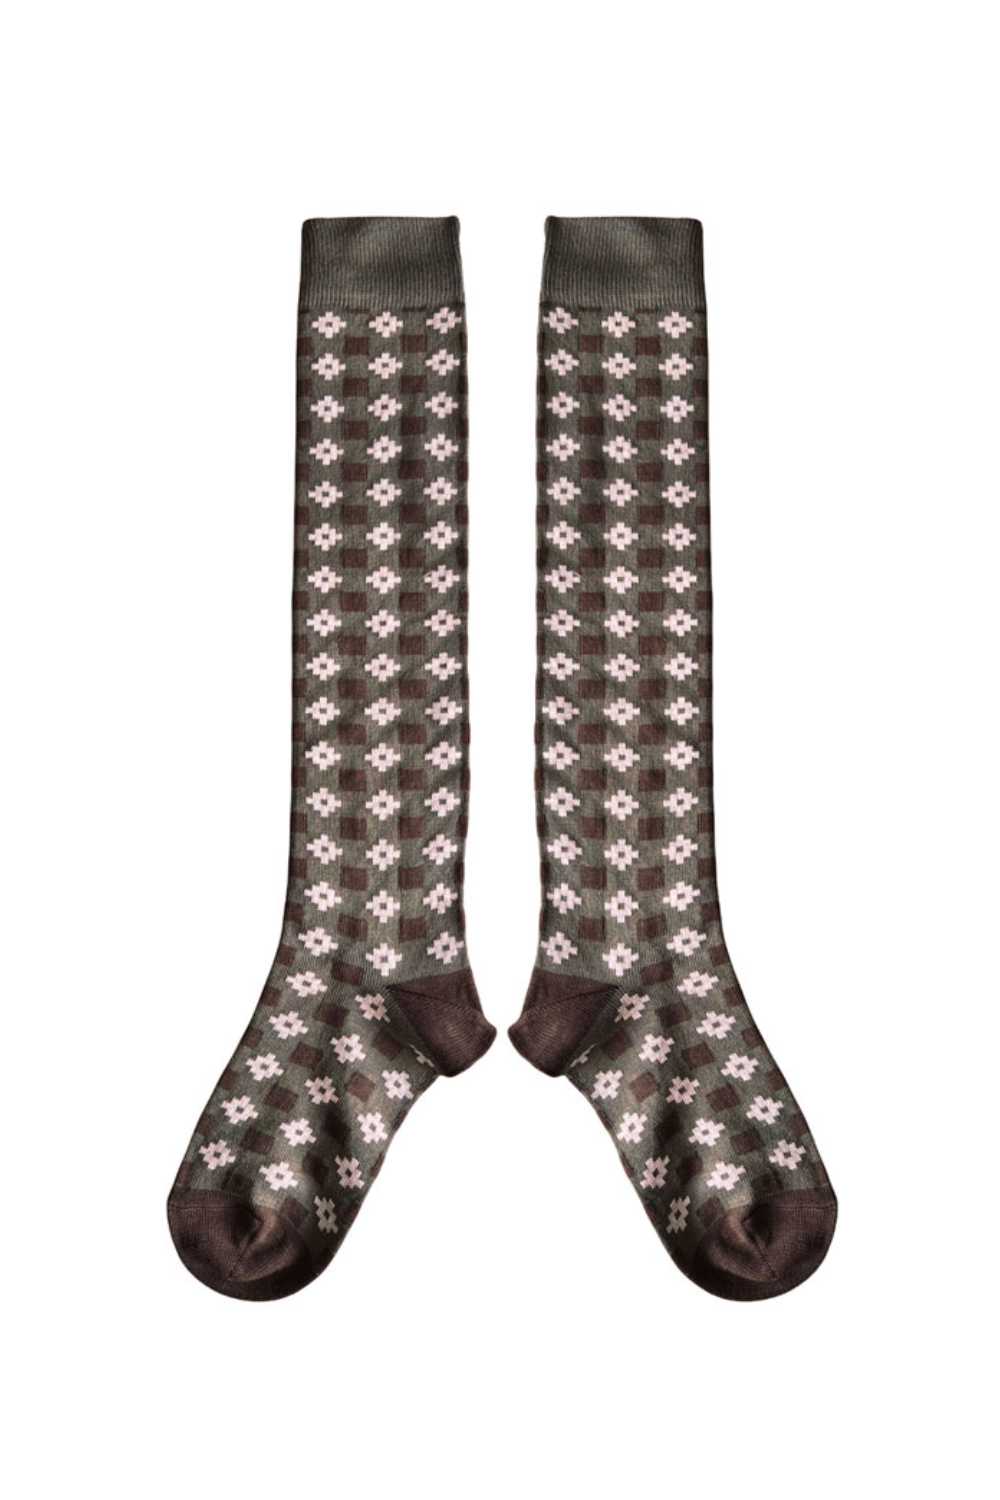 Castell Long Socks Khaki - Child